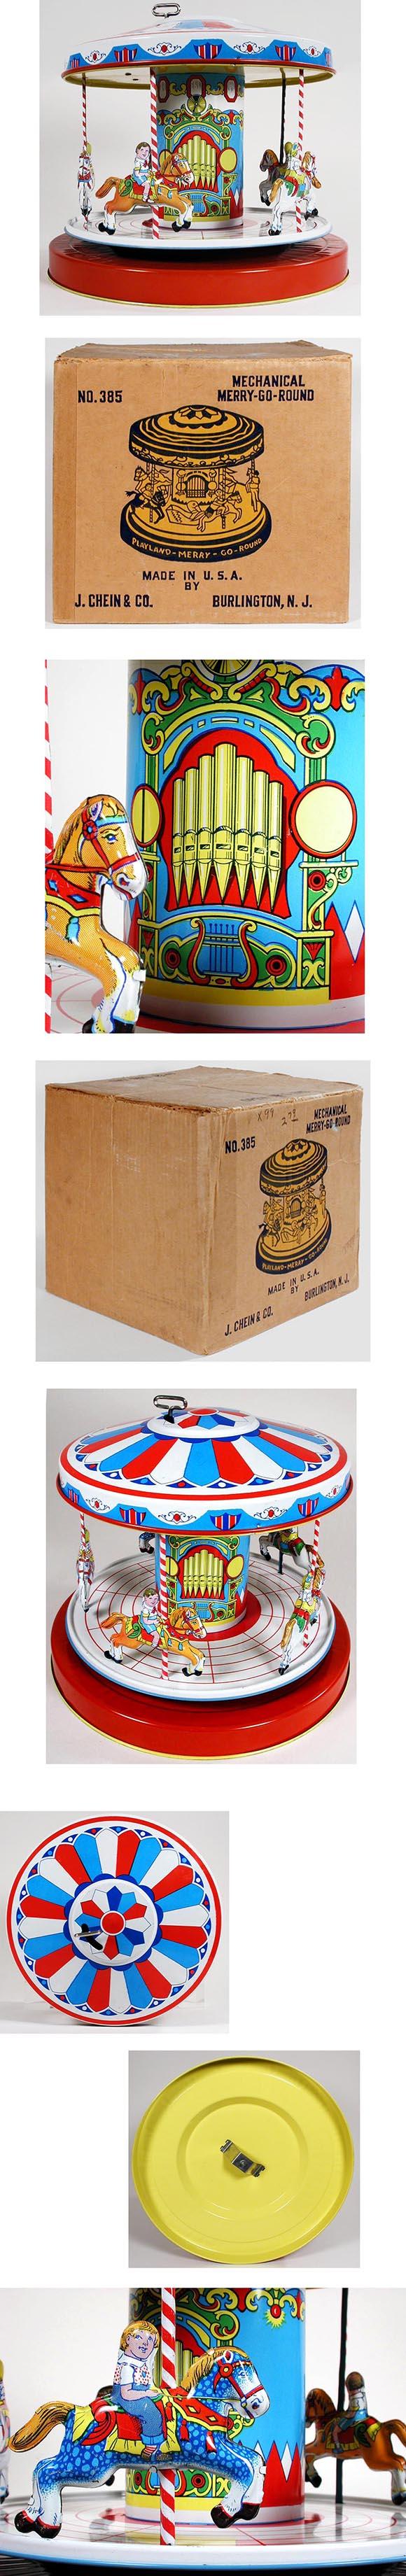 1950 Chein, No.385 Merry-Go-Round in Original Box